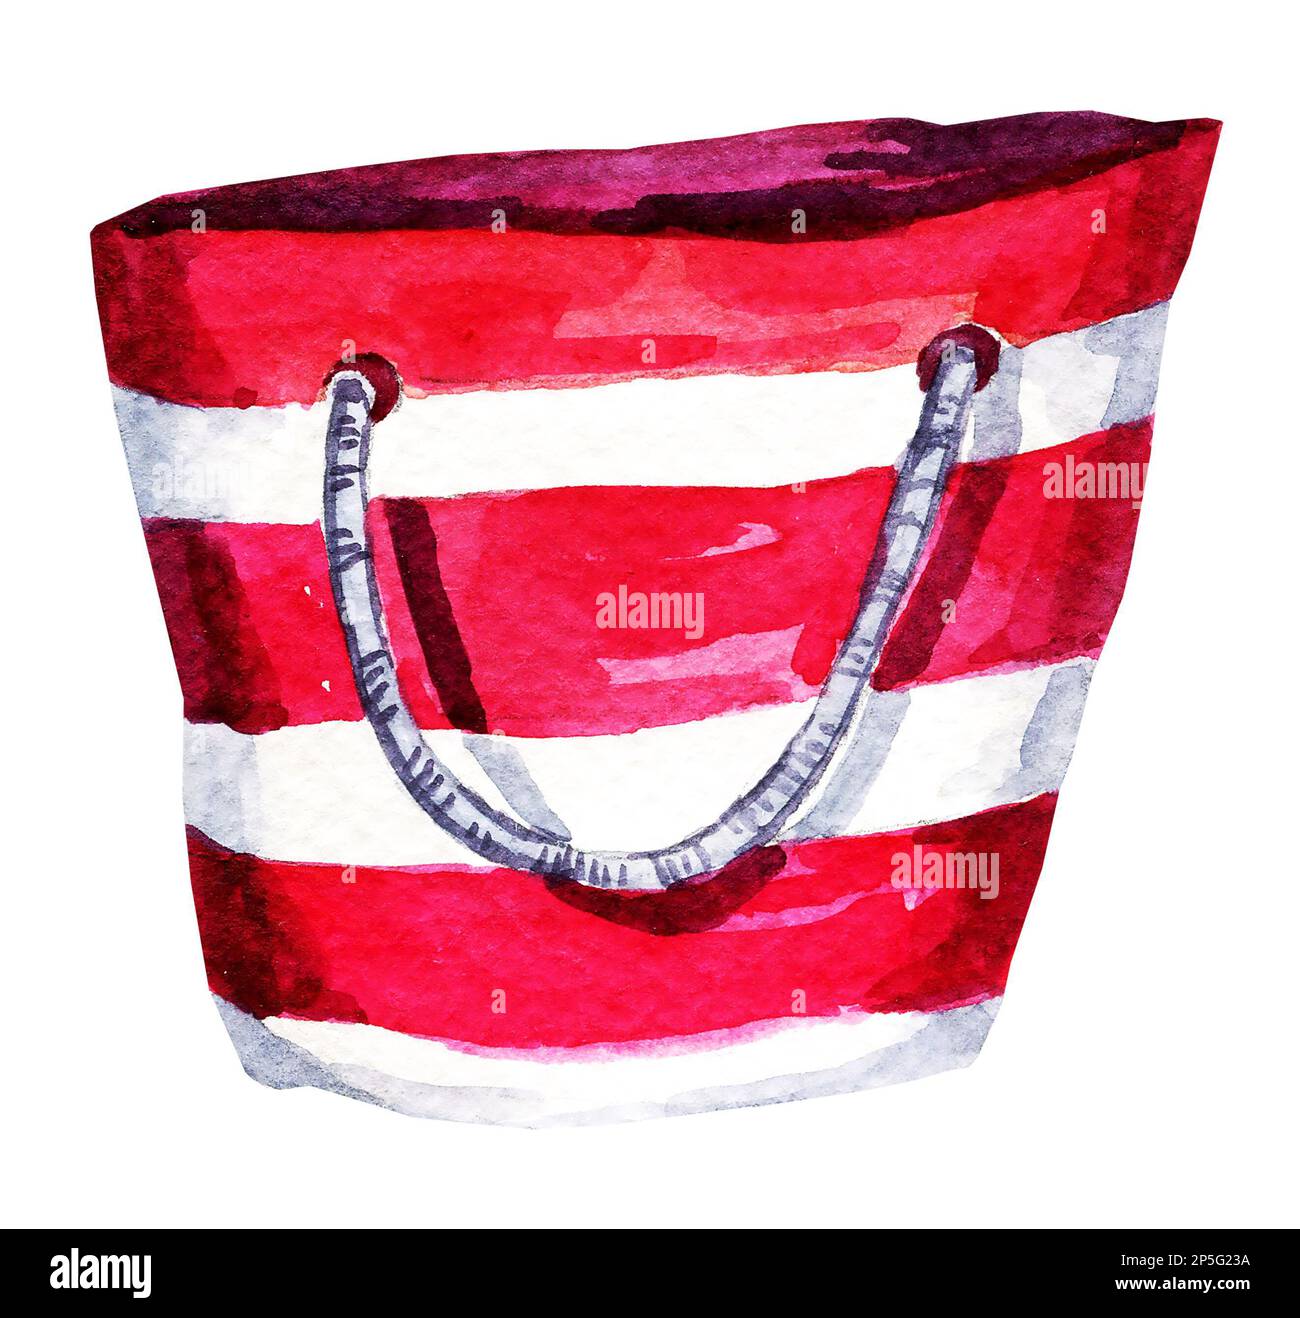 Illustration aquarelle d'un sac de plage rayé, illustration dessinée à la main, croquis, accessoire d'été, rouge et blanc Banque D'Images